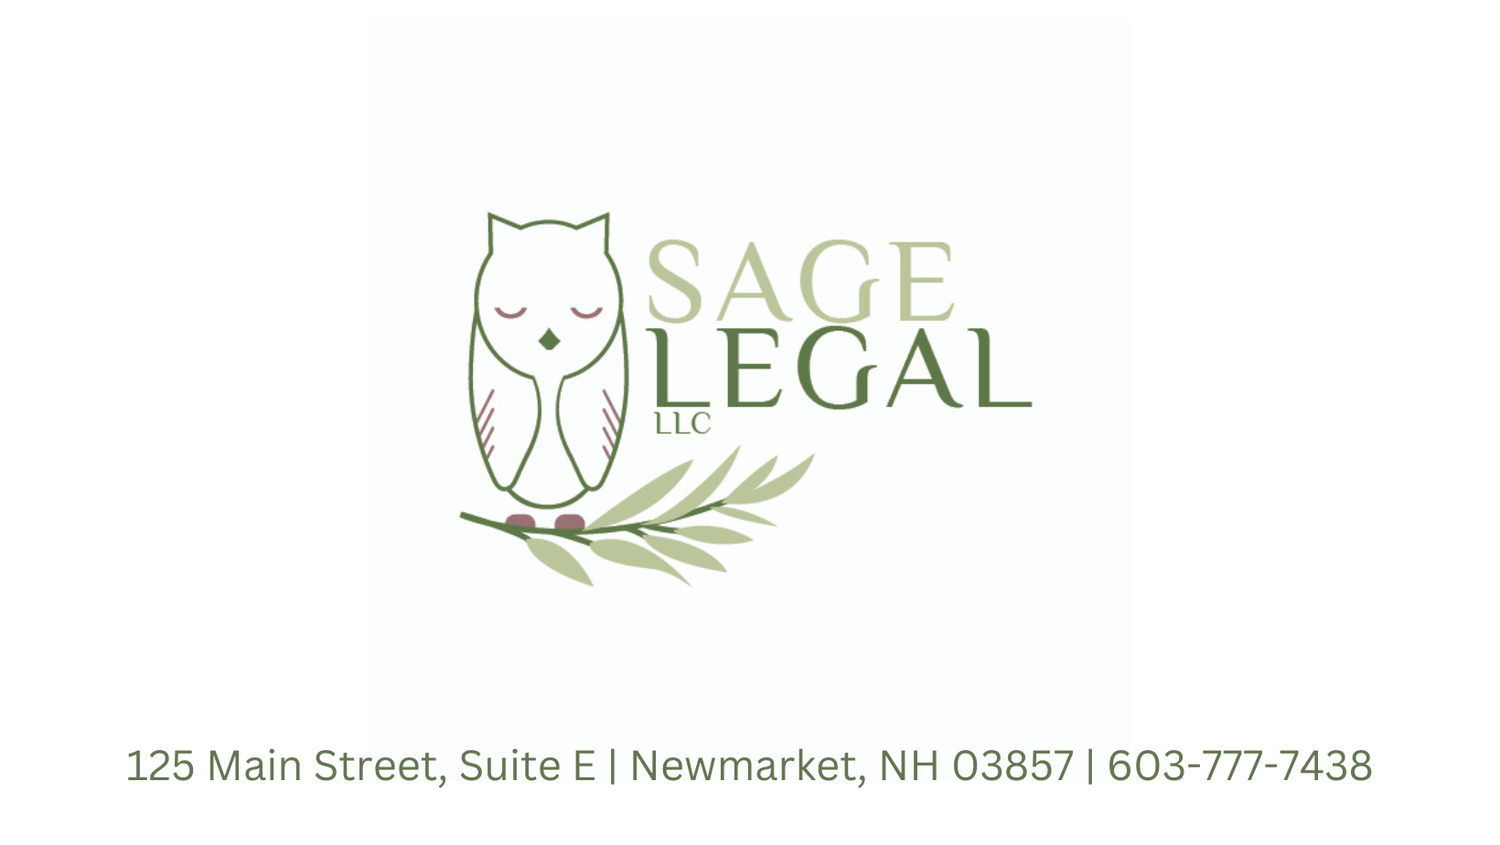 Sage Legal, LLC